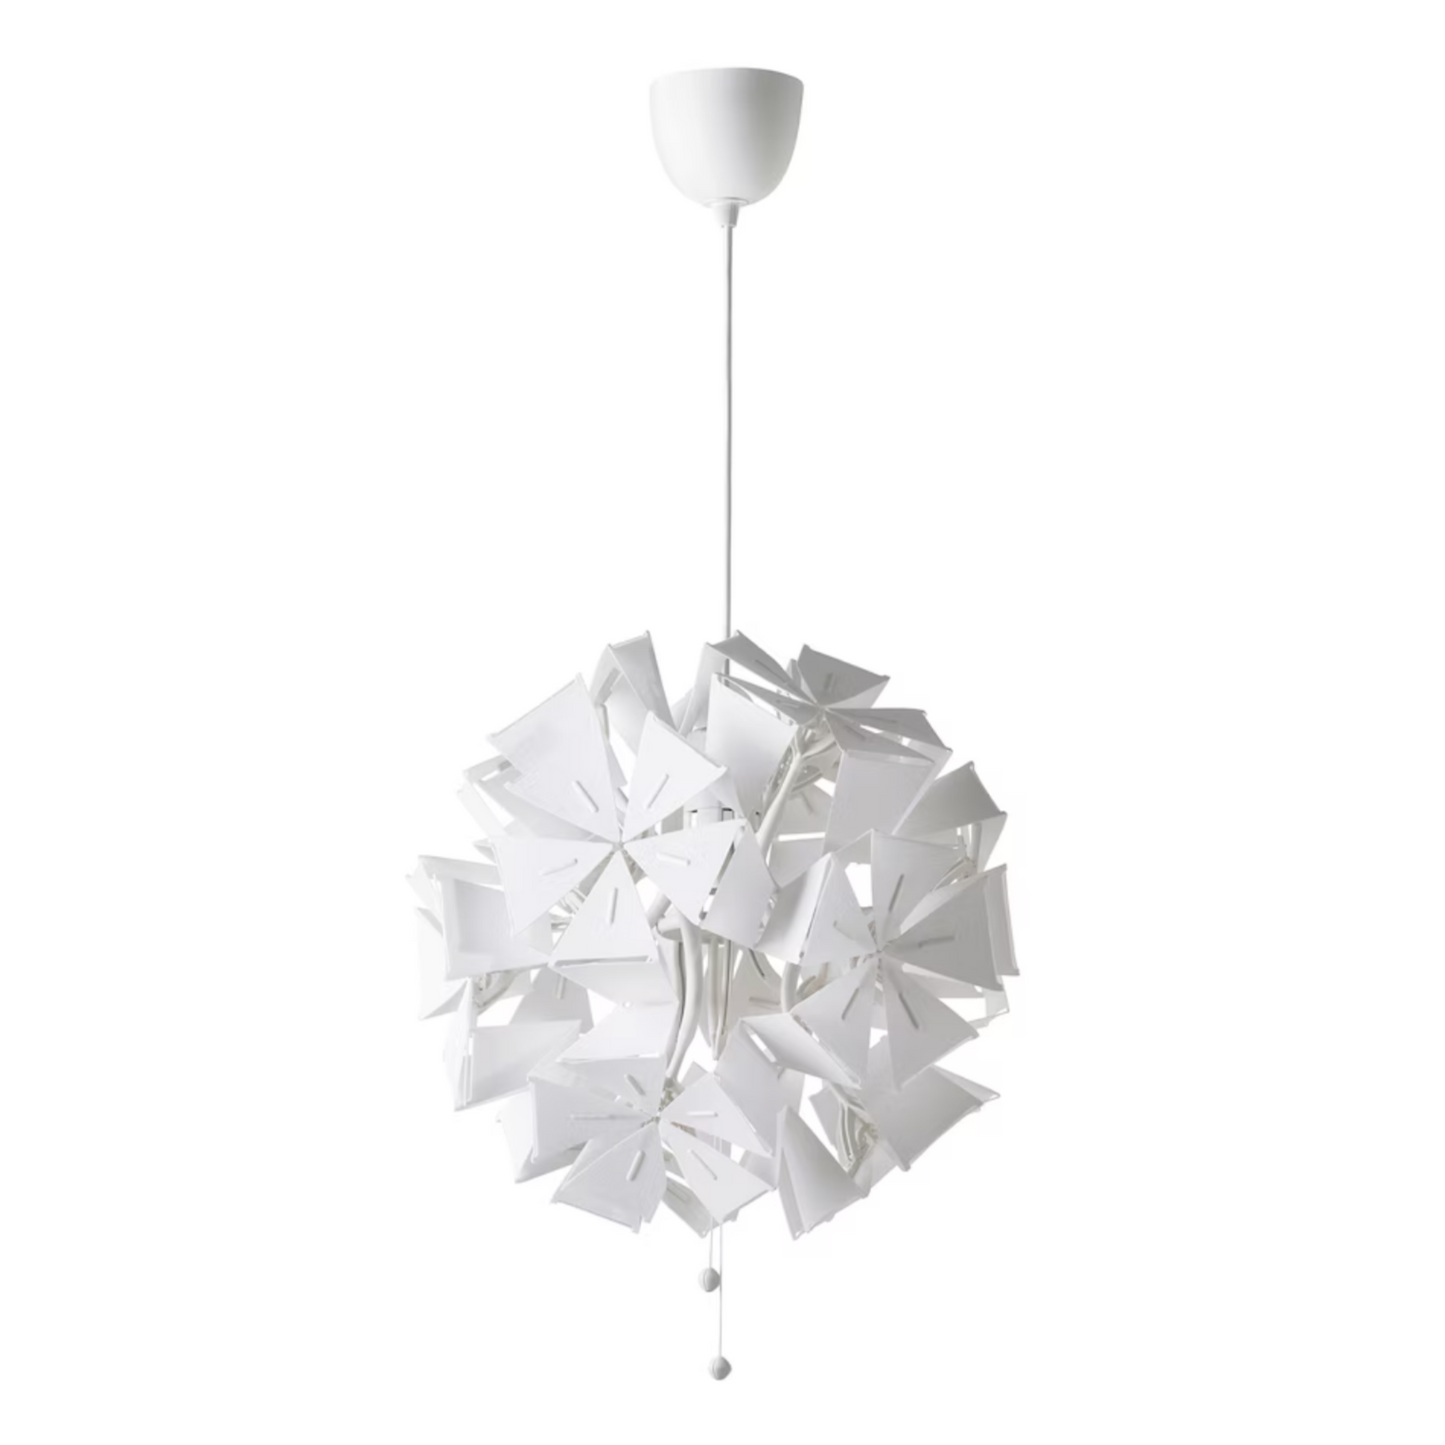 IKEA Ramsele Light 43cm, Origami (4522383048769)